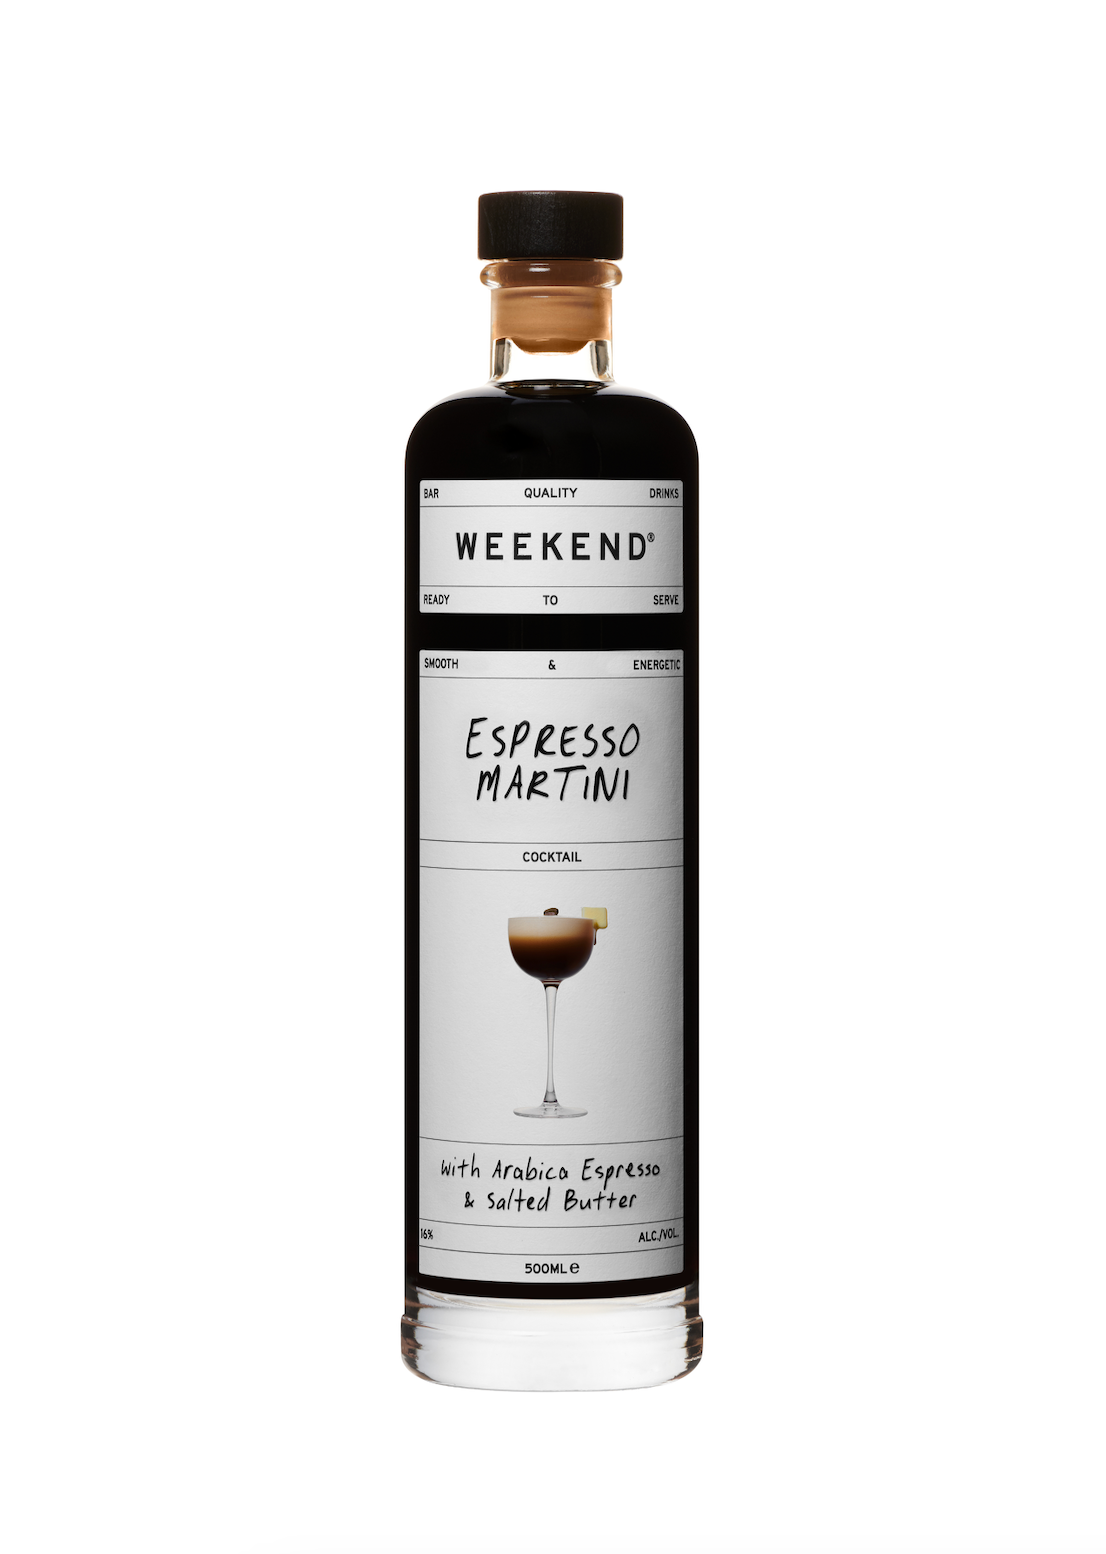 Pre-mixed espresso martini cocktail in a bottle